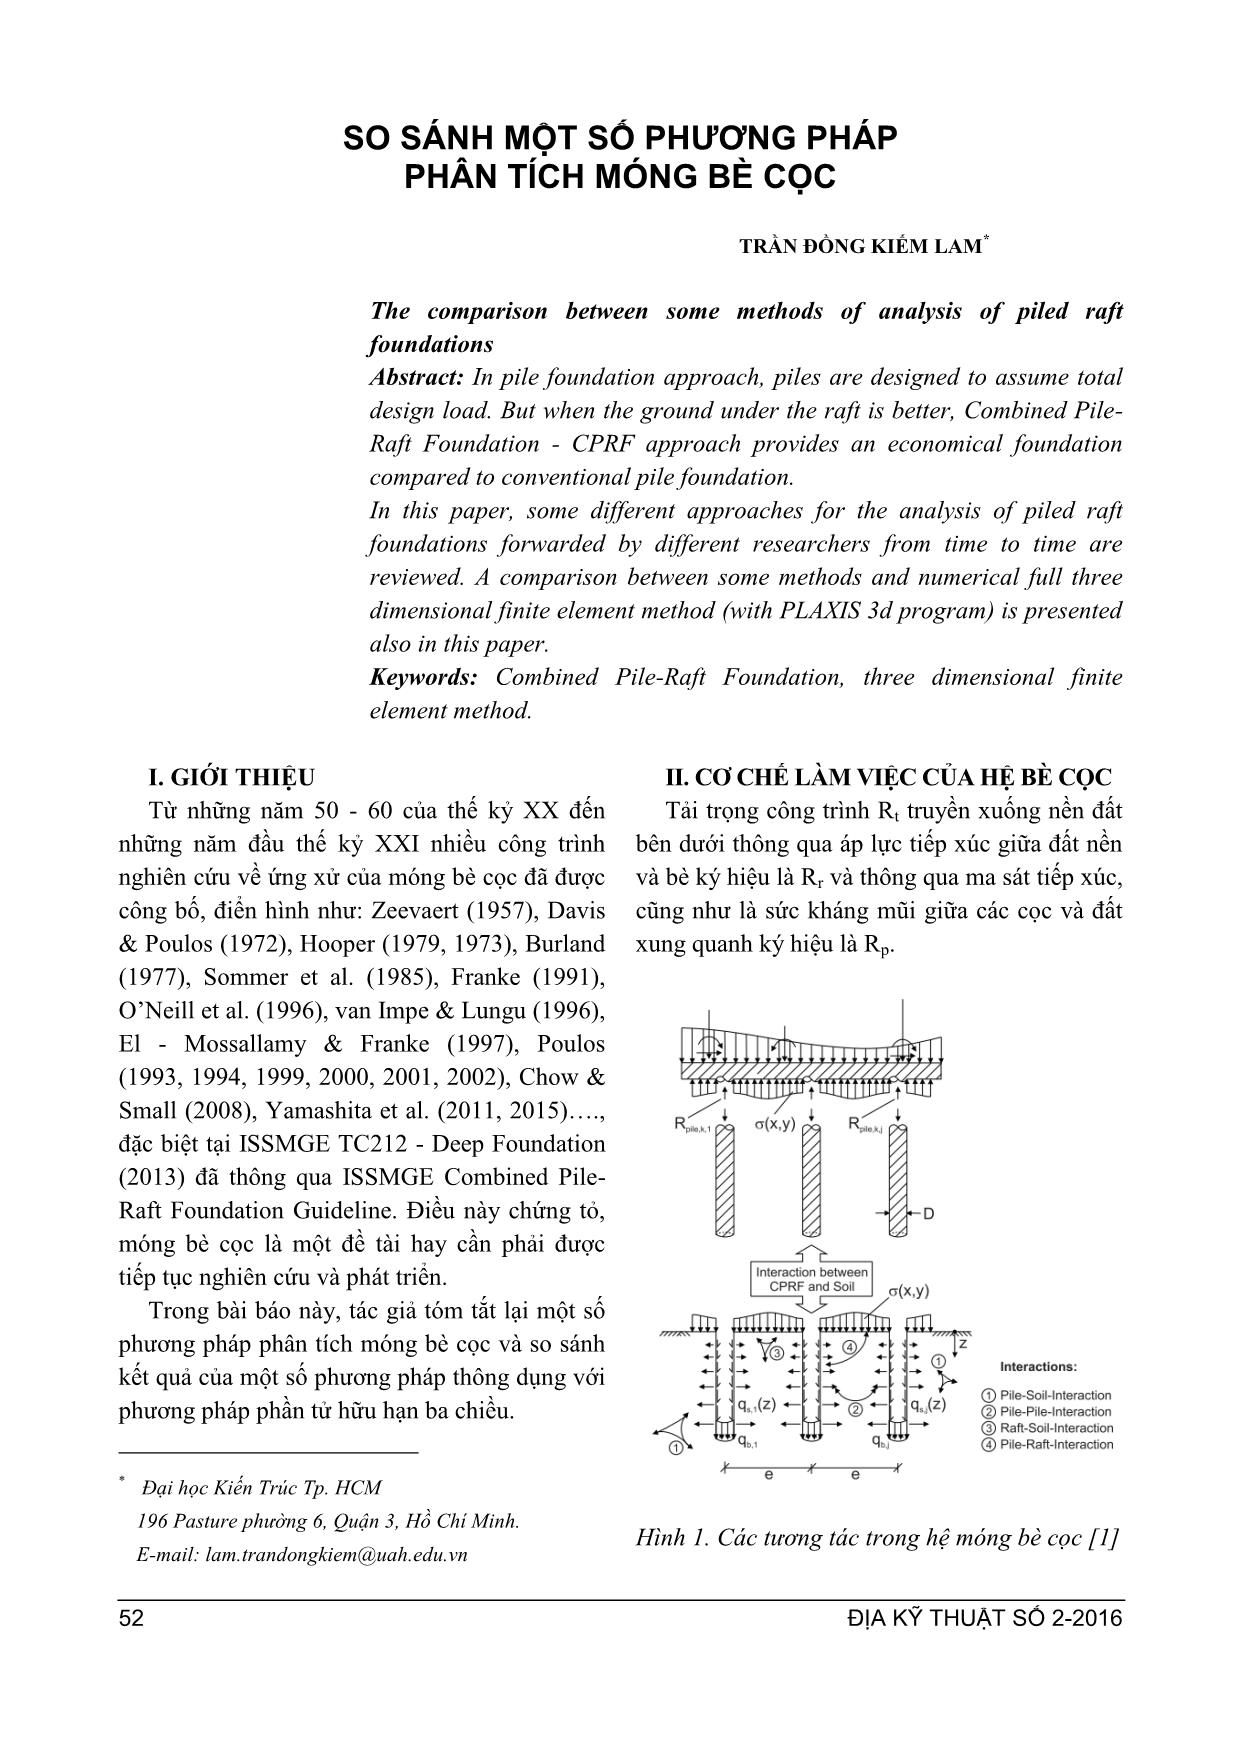 So sánh một số phương pháp phân tích móng bè cọ trang 1